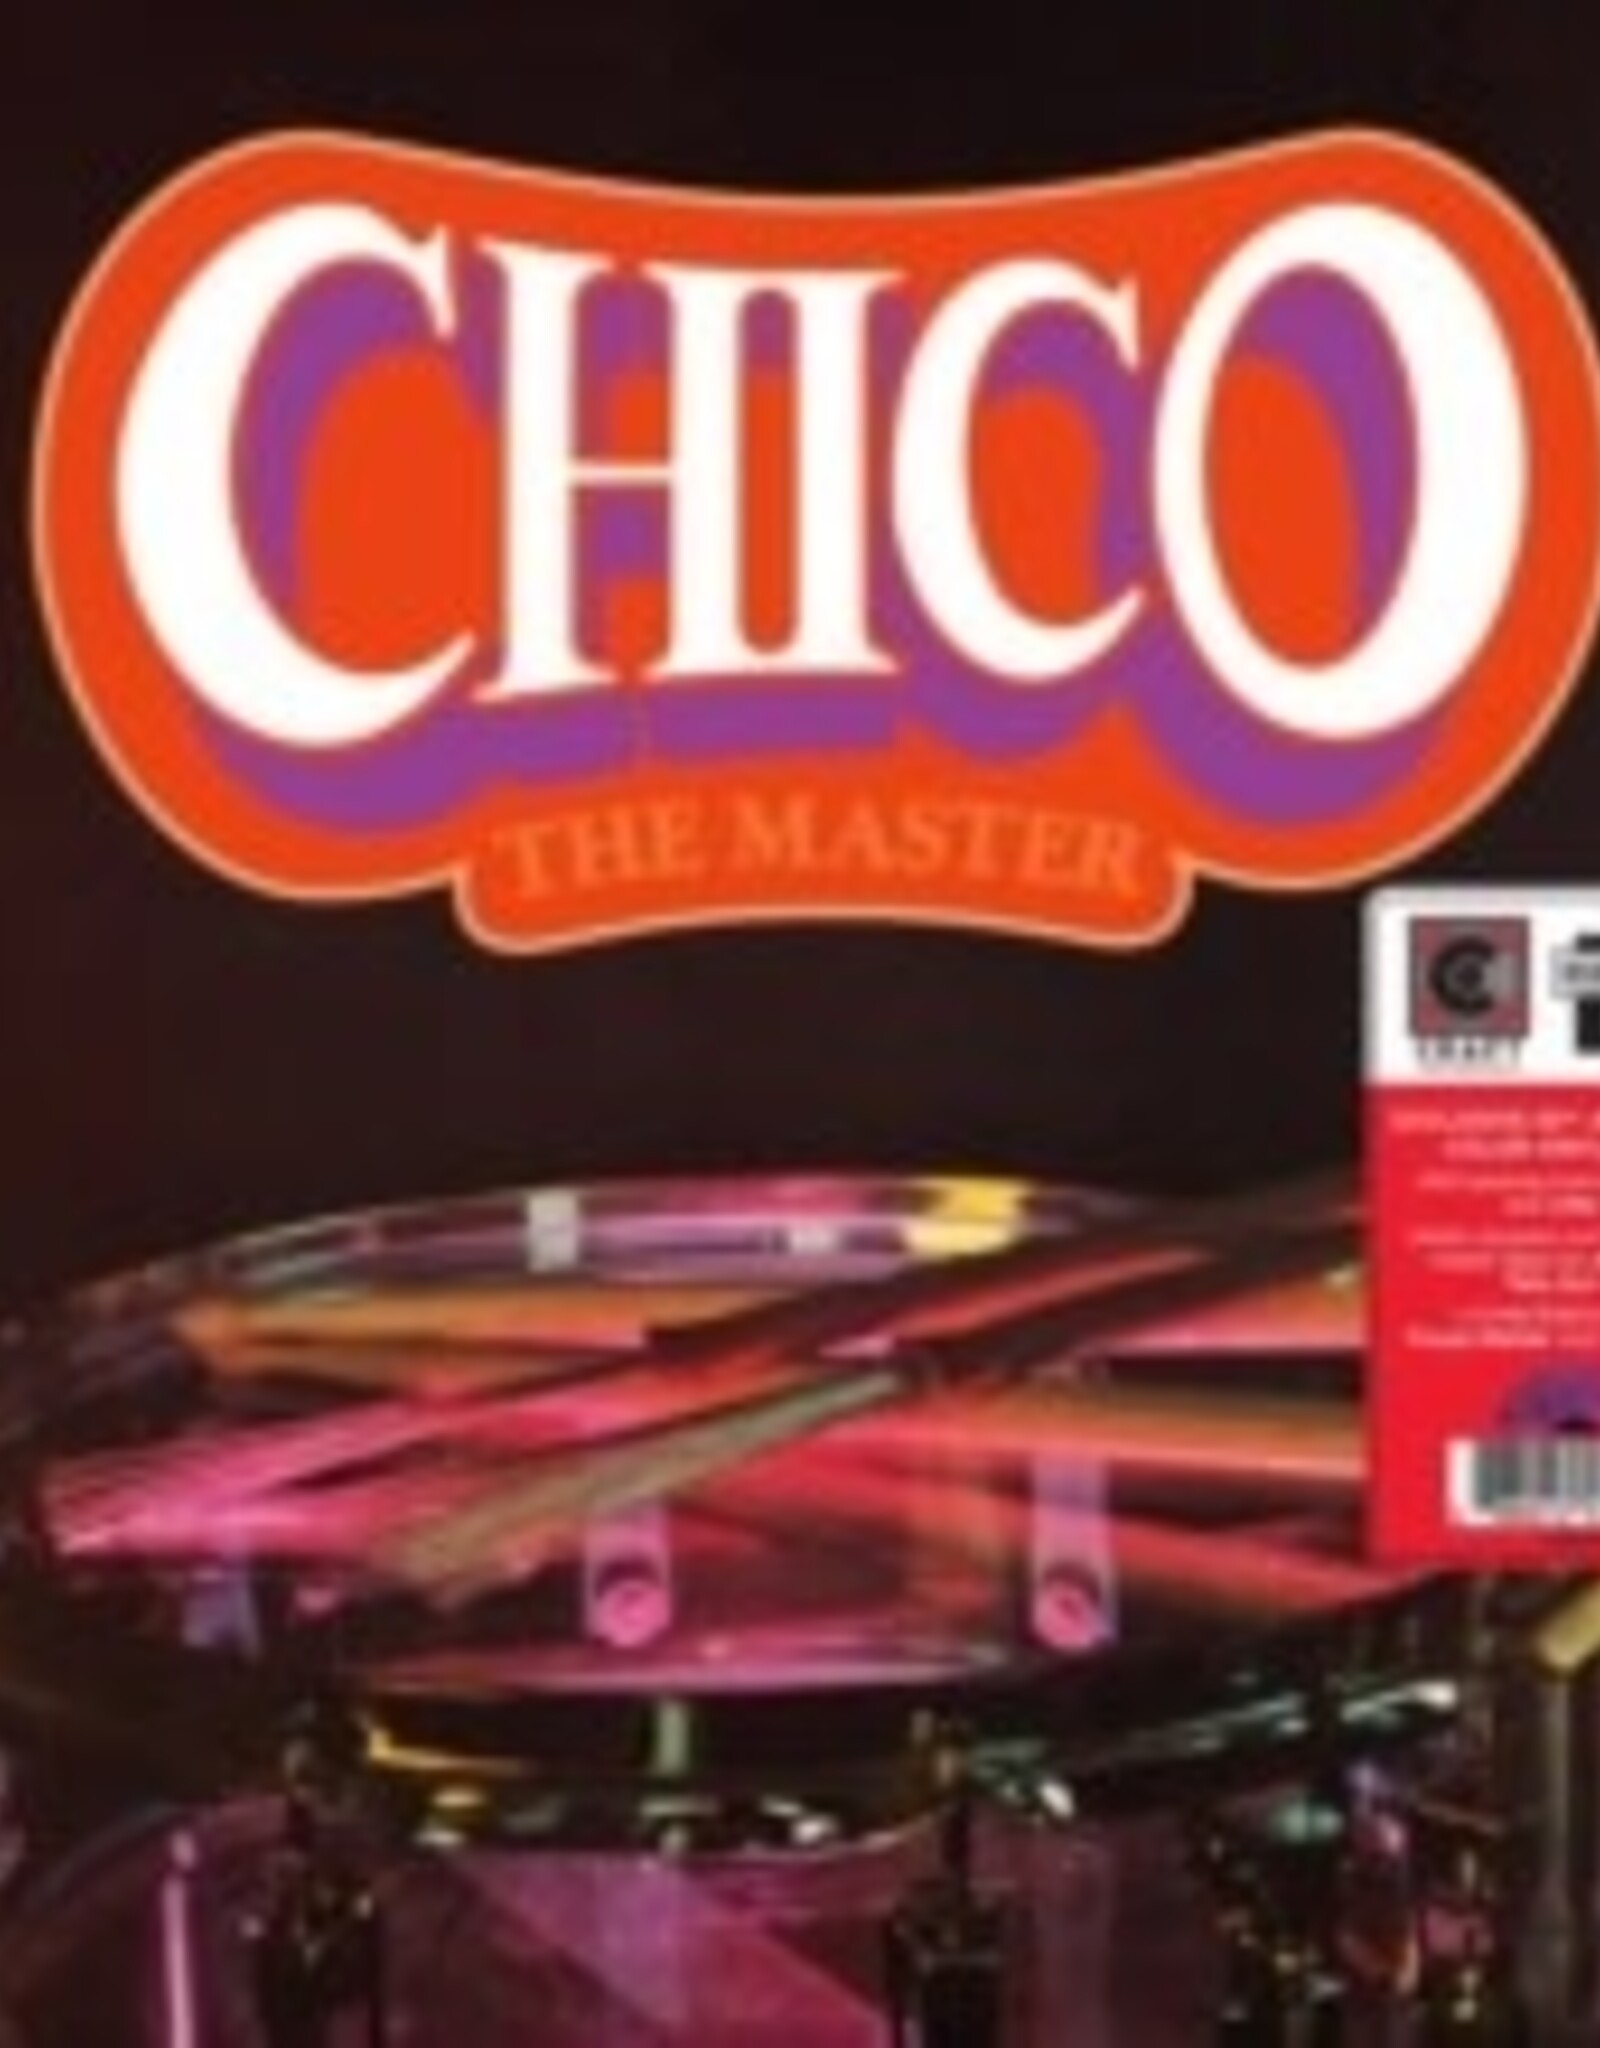 Chico Hamilton - The Master (50th Anniversary Edition)	(RSDBF 2023)